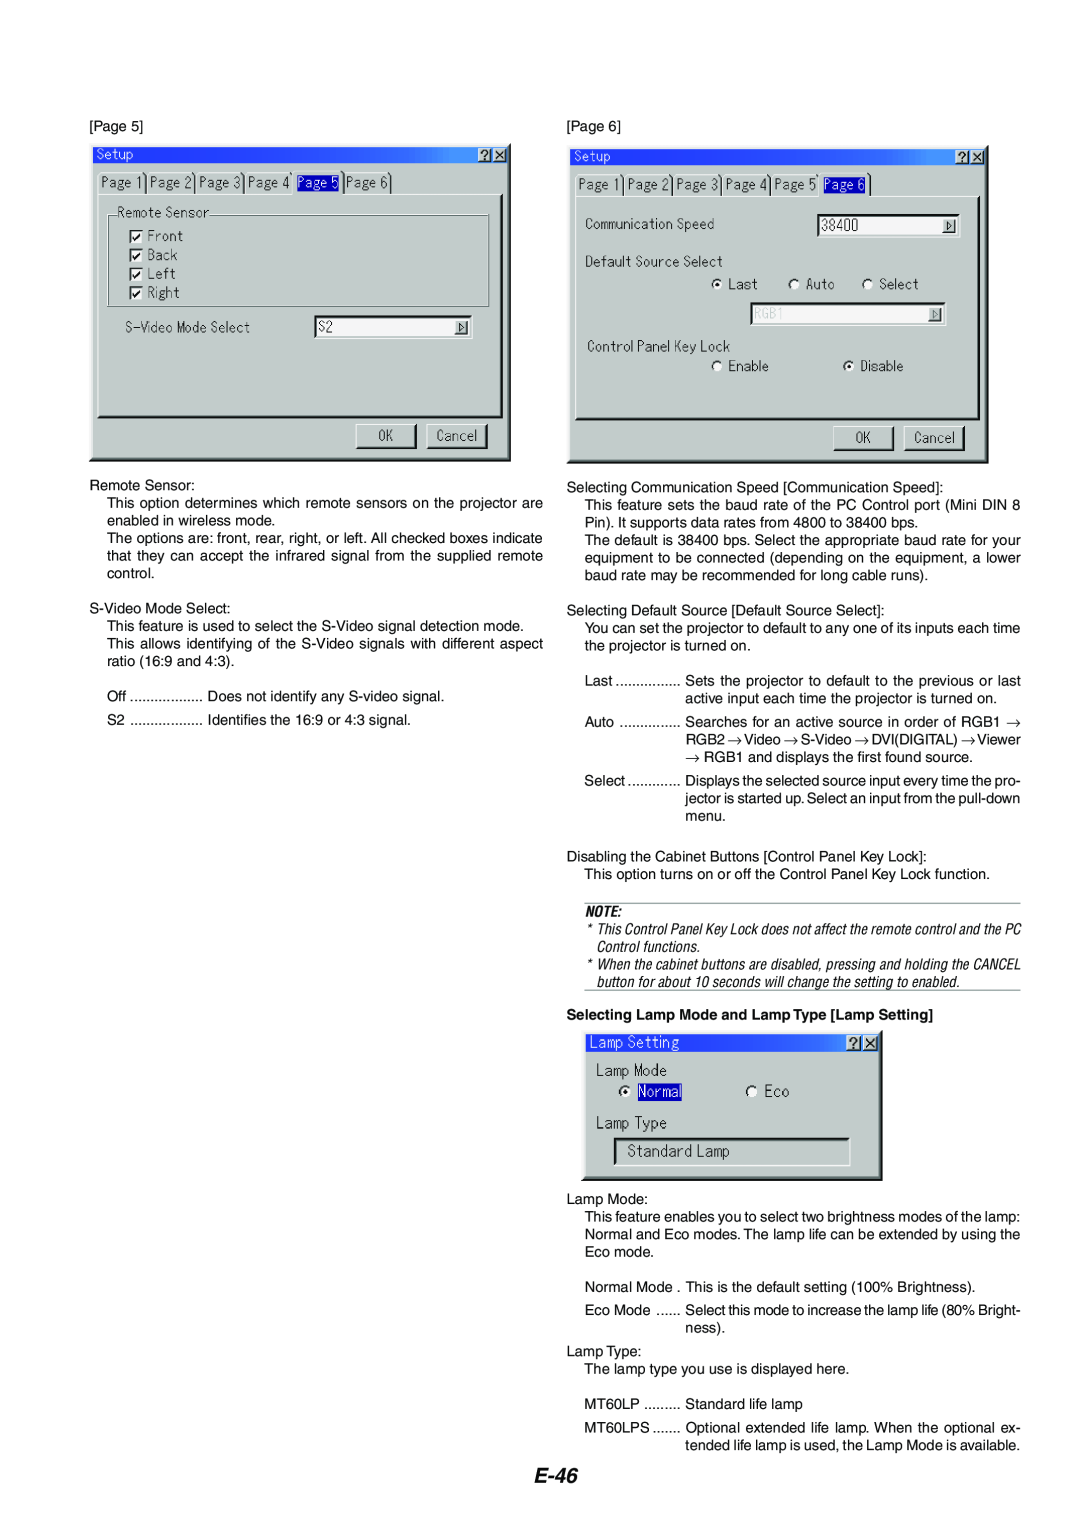 NEC MT1065/MT1060 user manual E-46, Selecting Lamp Mode and Lamp Type Lamp Setting 